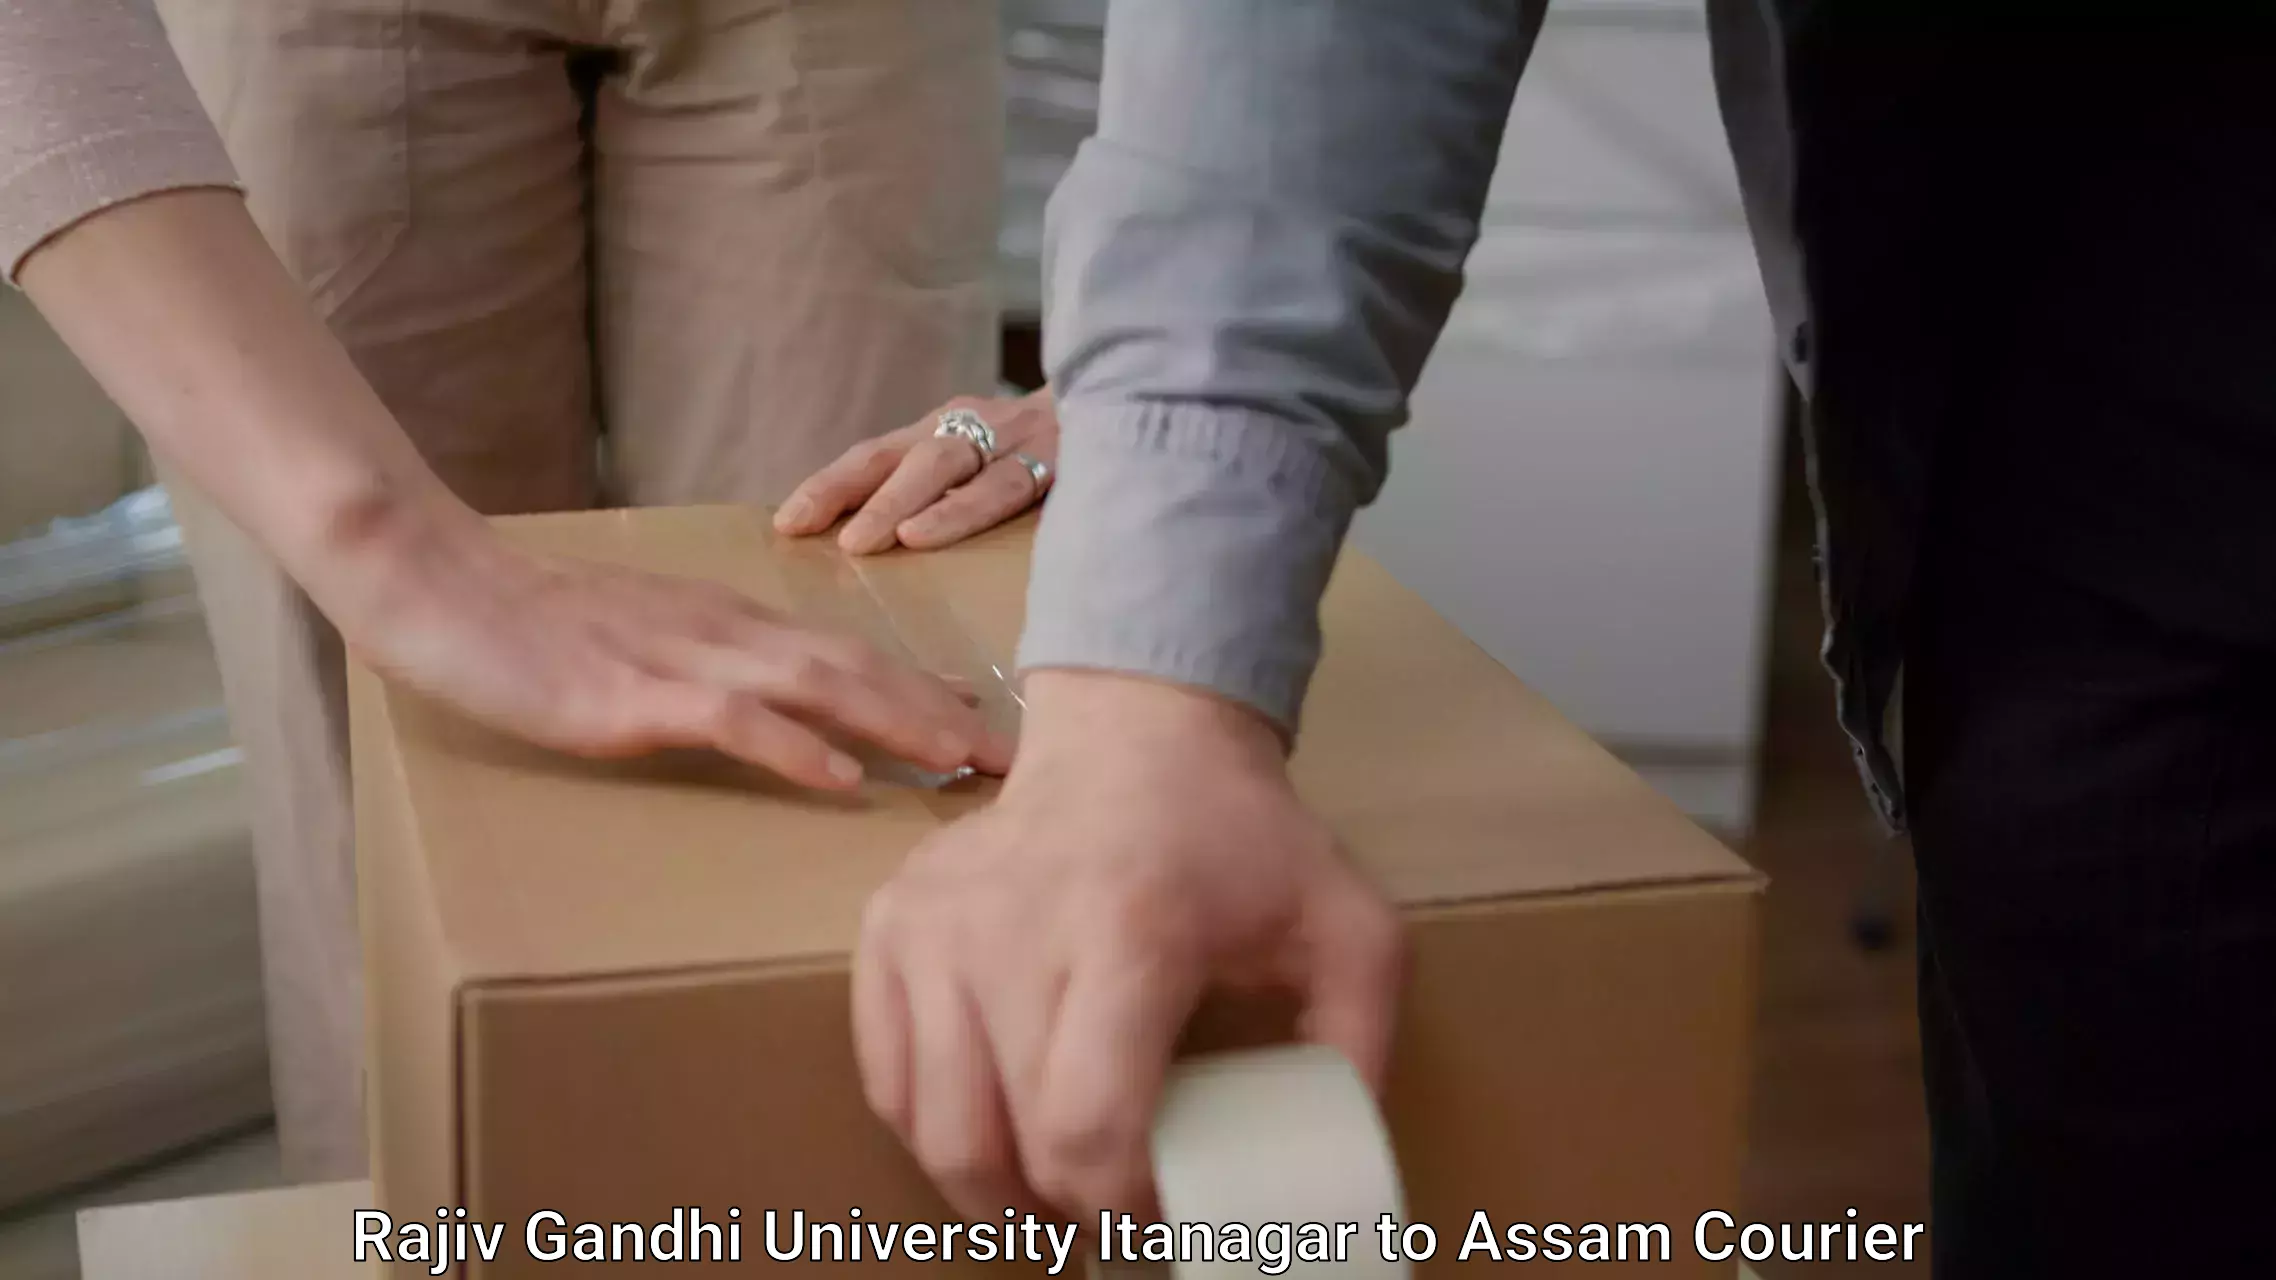 Furniture moving assistance in Rajiv Gandhi University Itanagar to Tezpur University